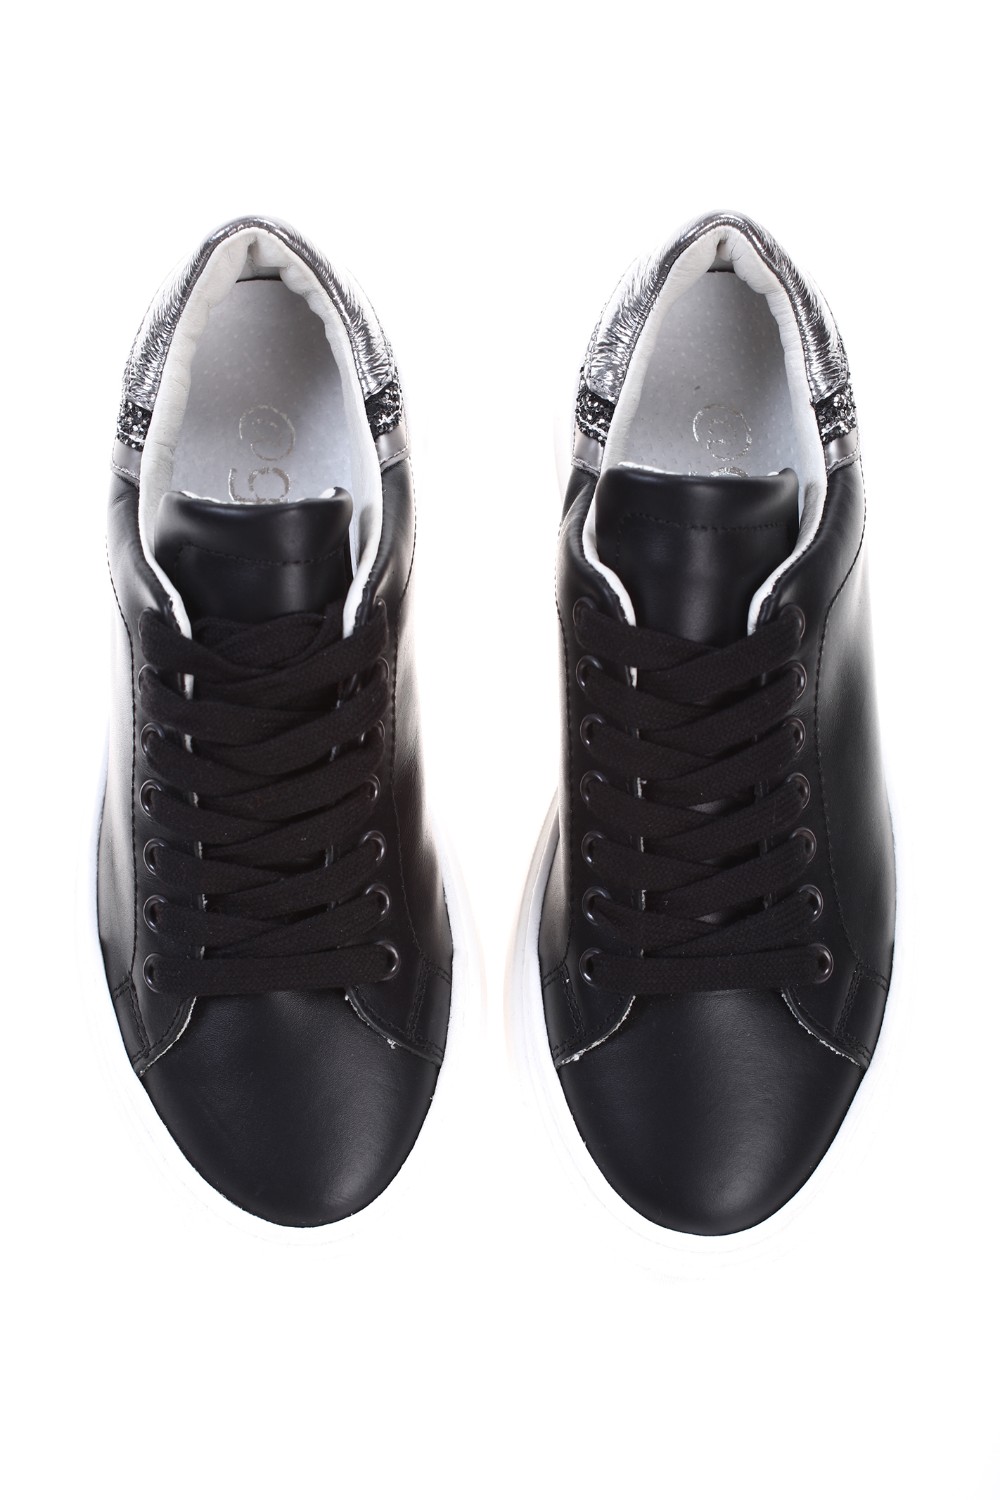 shop @GO Saldi Scarpe: @GO scarpa " Galaxy " nero in pelle.
Glitter sulla parte posteriore.
Suola bianca.
Made in Italy.. NON 236SML-N number 1597166